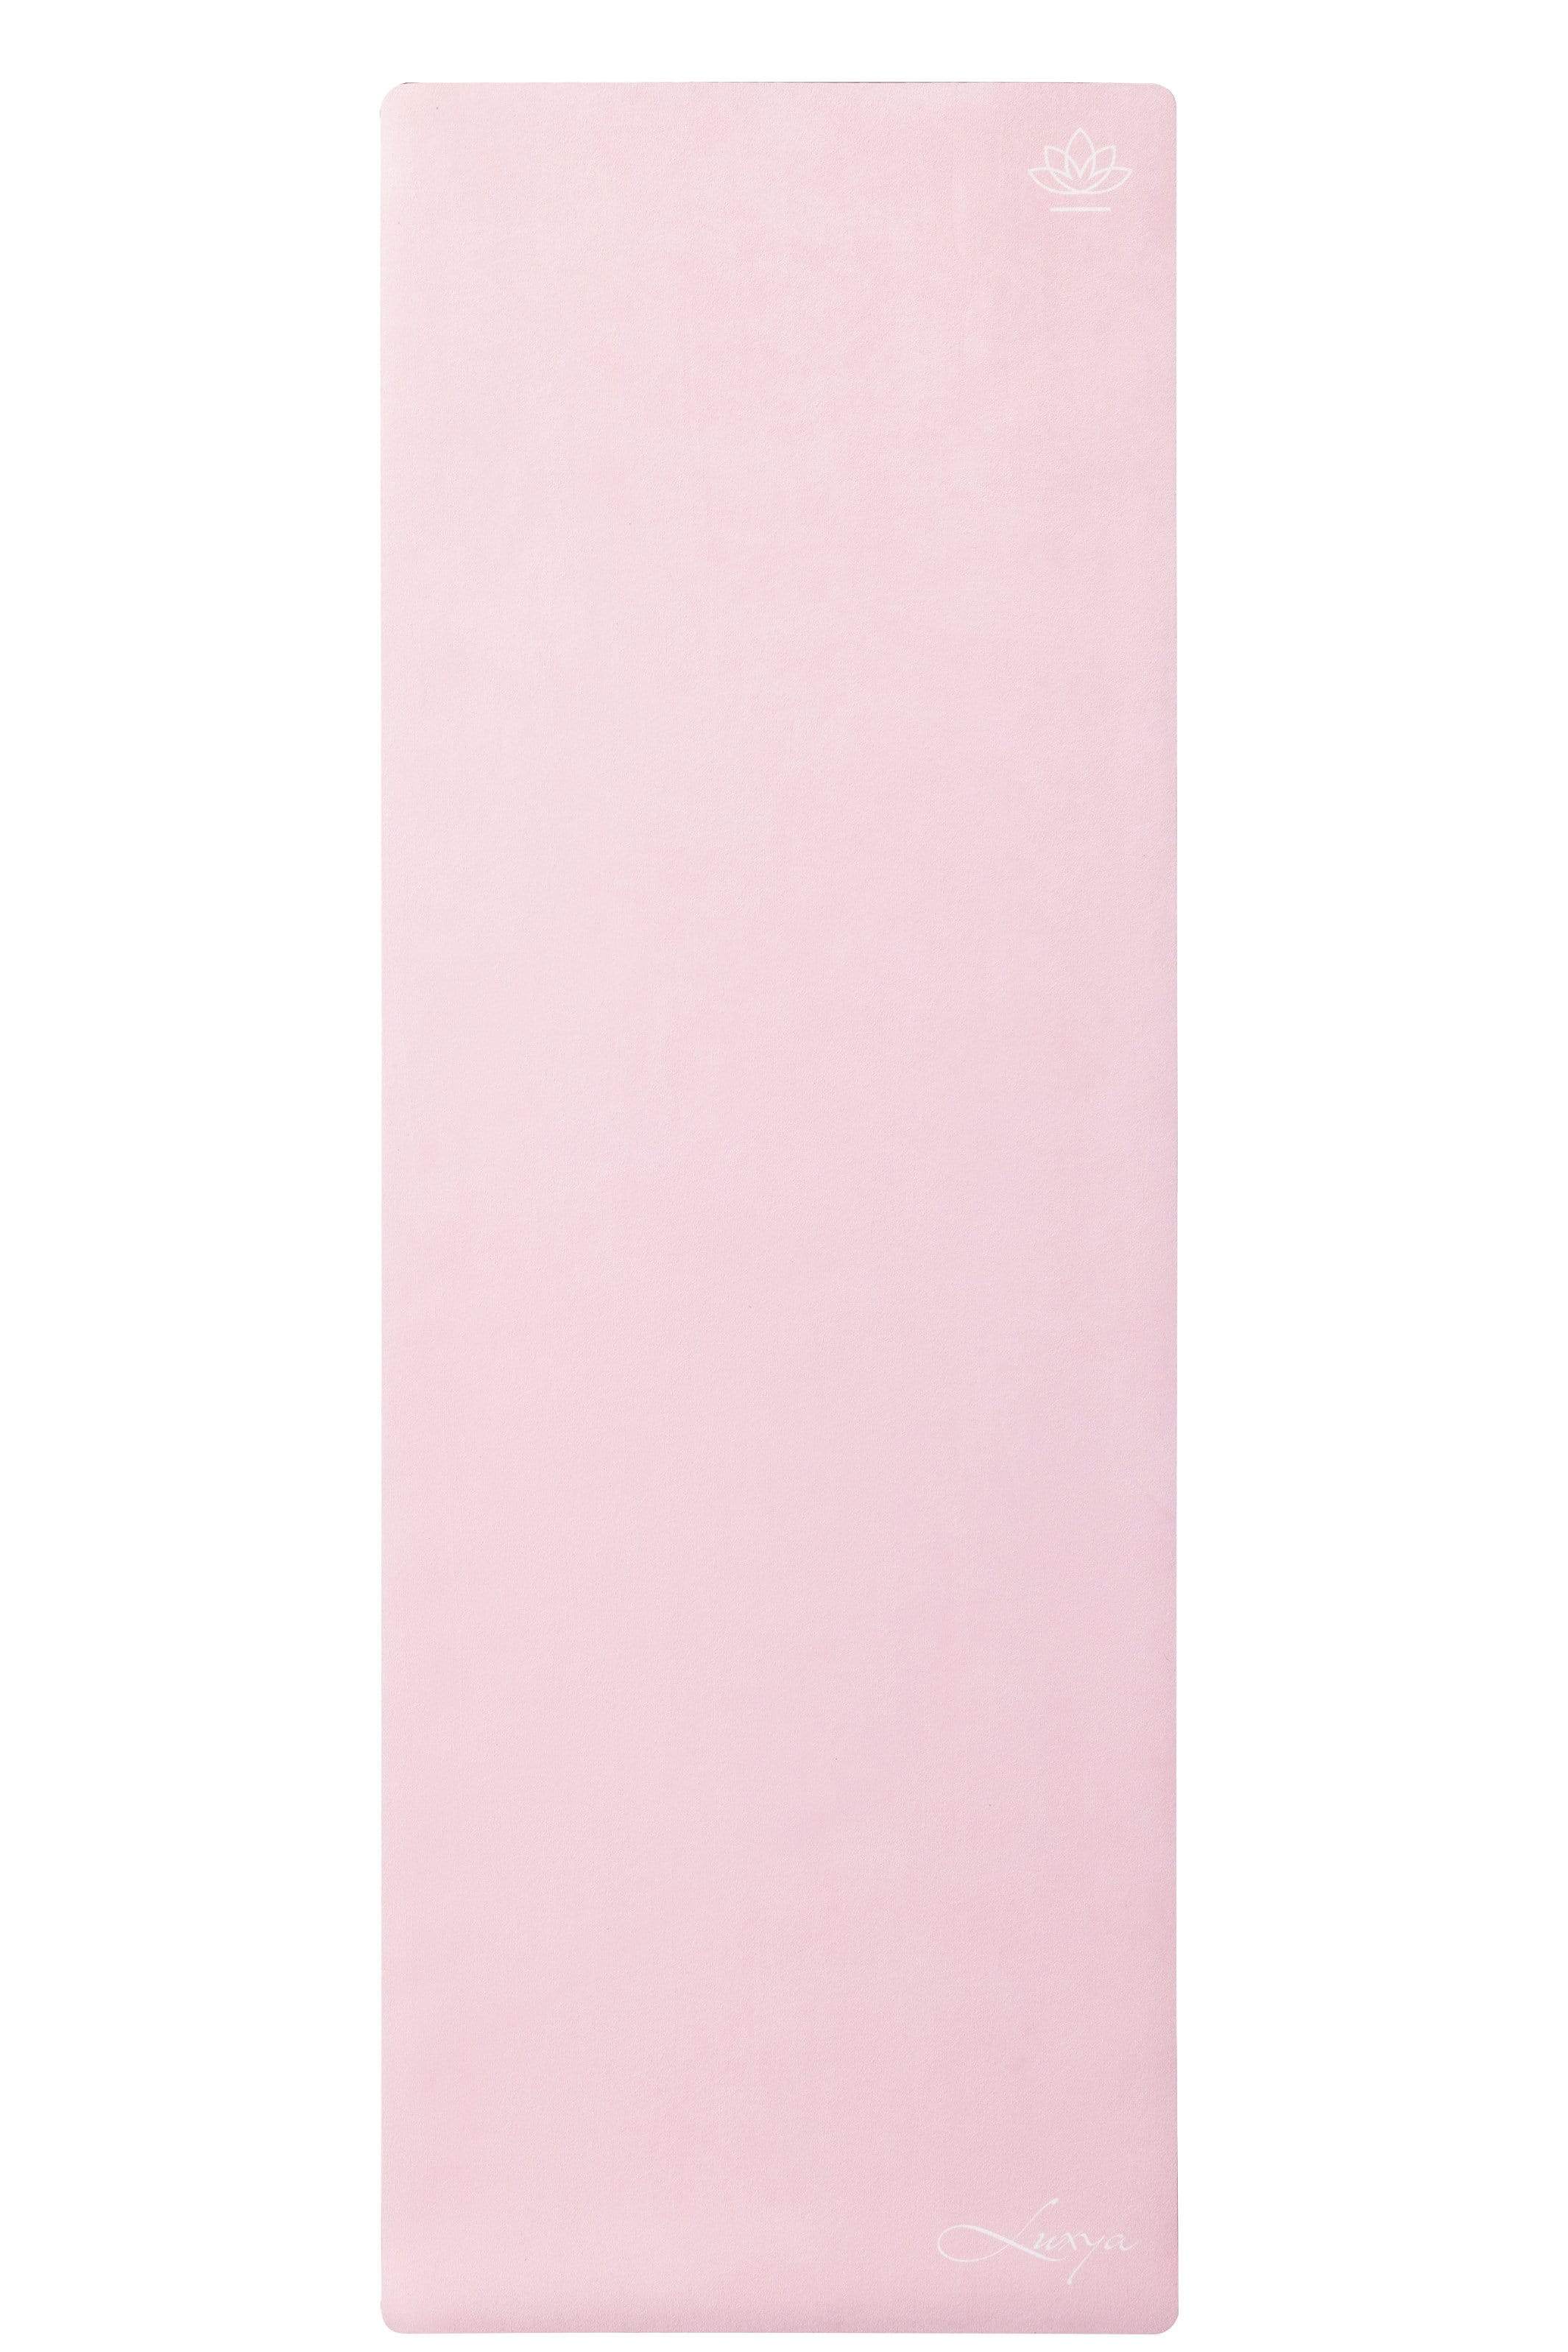 Apheleia Pink - 3mm Luxury Yoga Mat